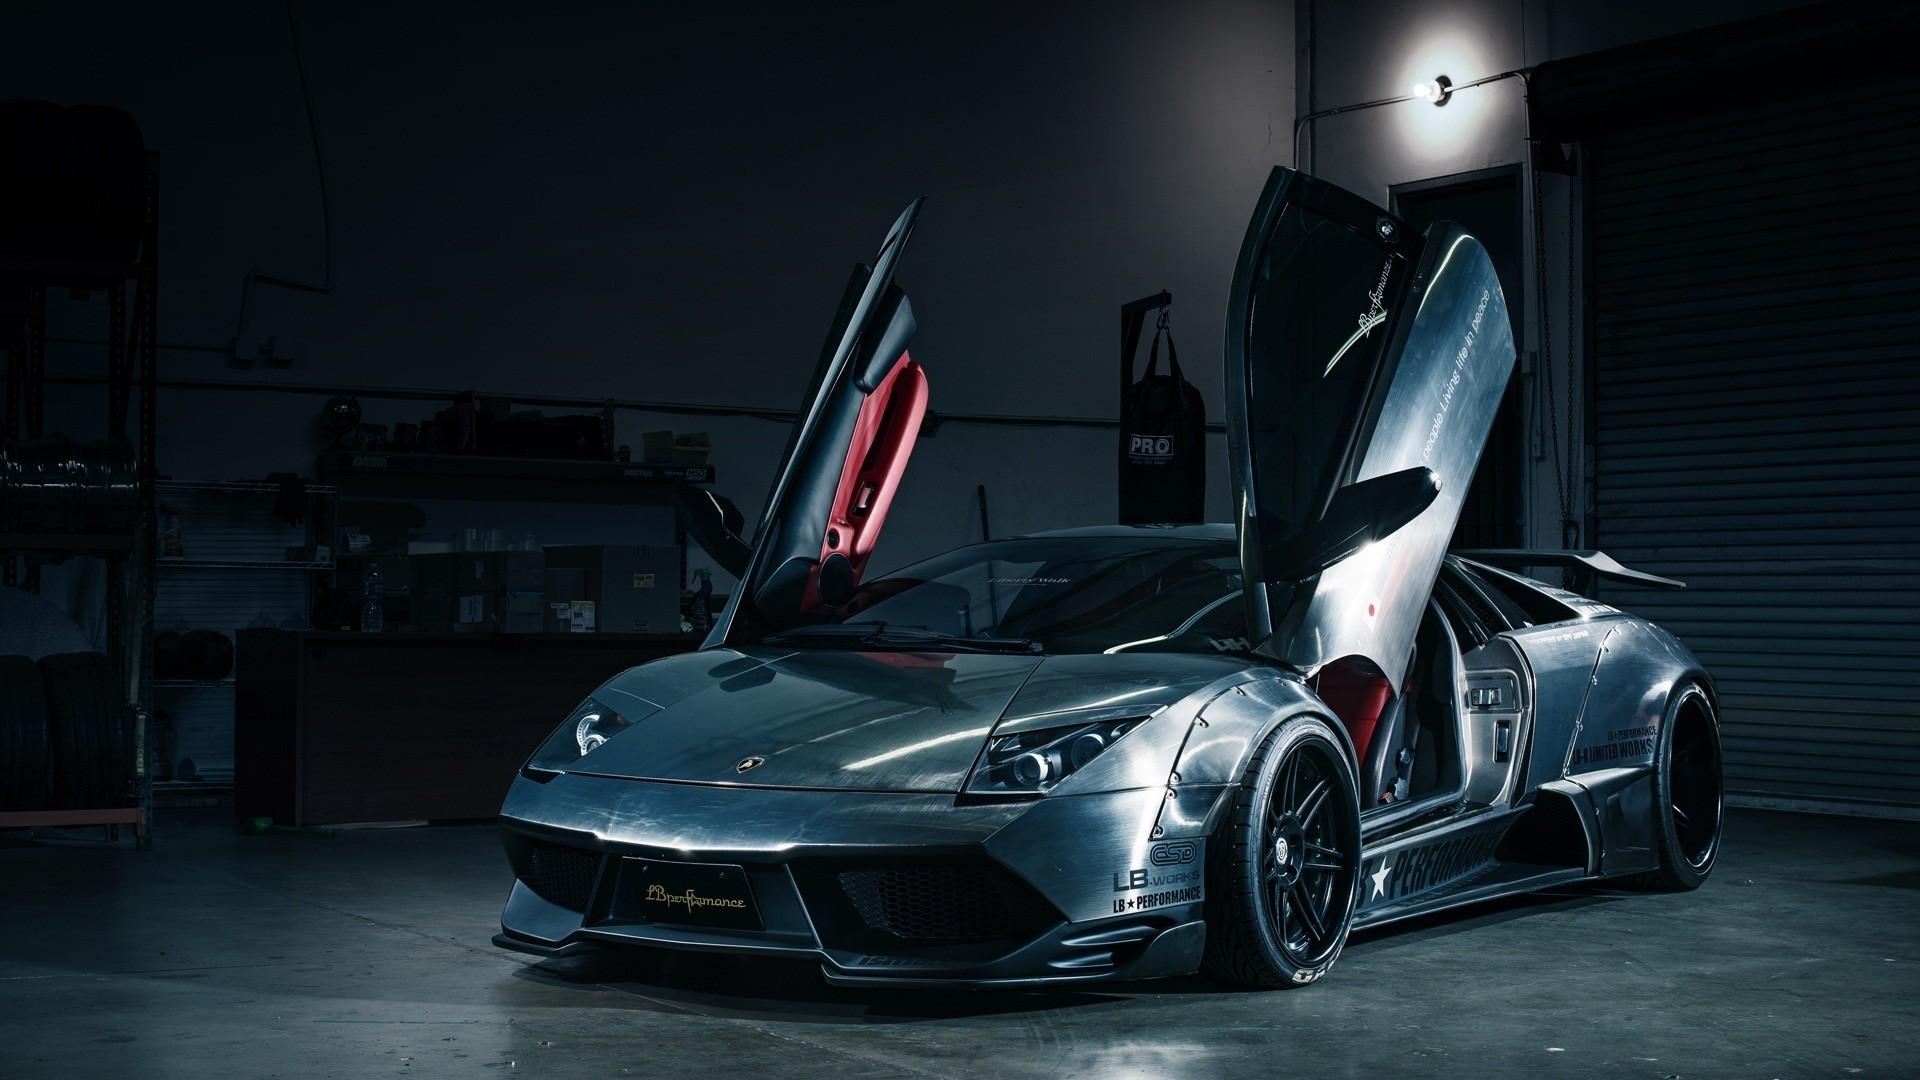 cars, performance, Lamborghini Murcielago wallpaper